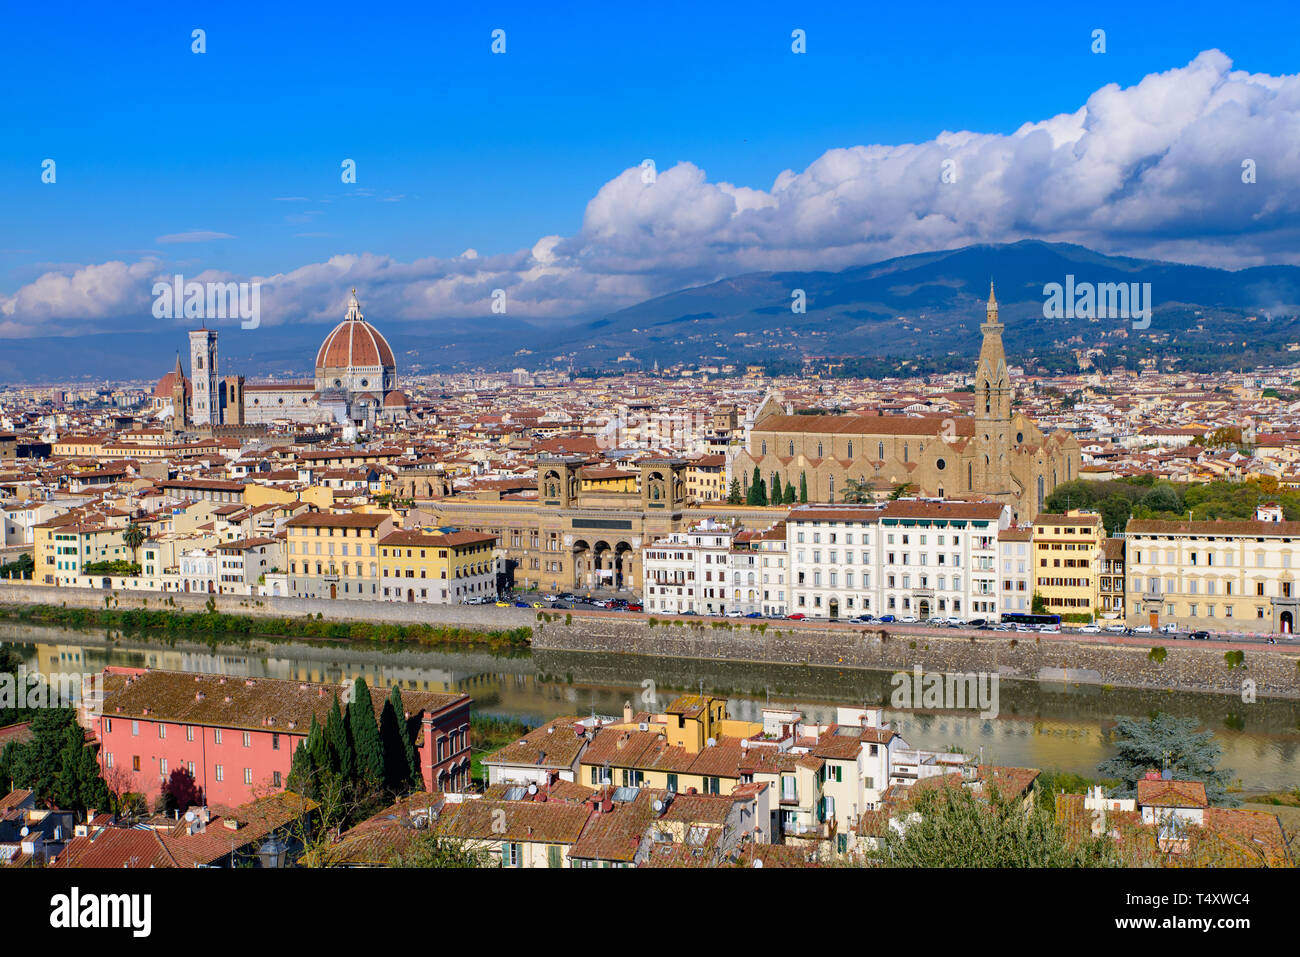 Vue panoramique sur la ville de Florence depuis la place Michelangelo en Italie Banque D'Images